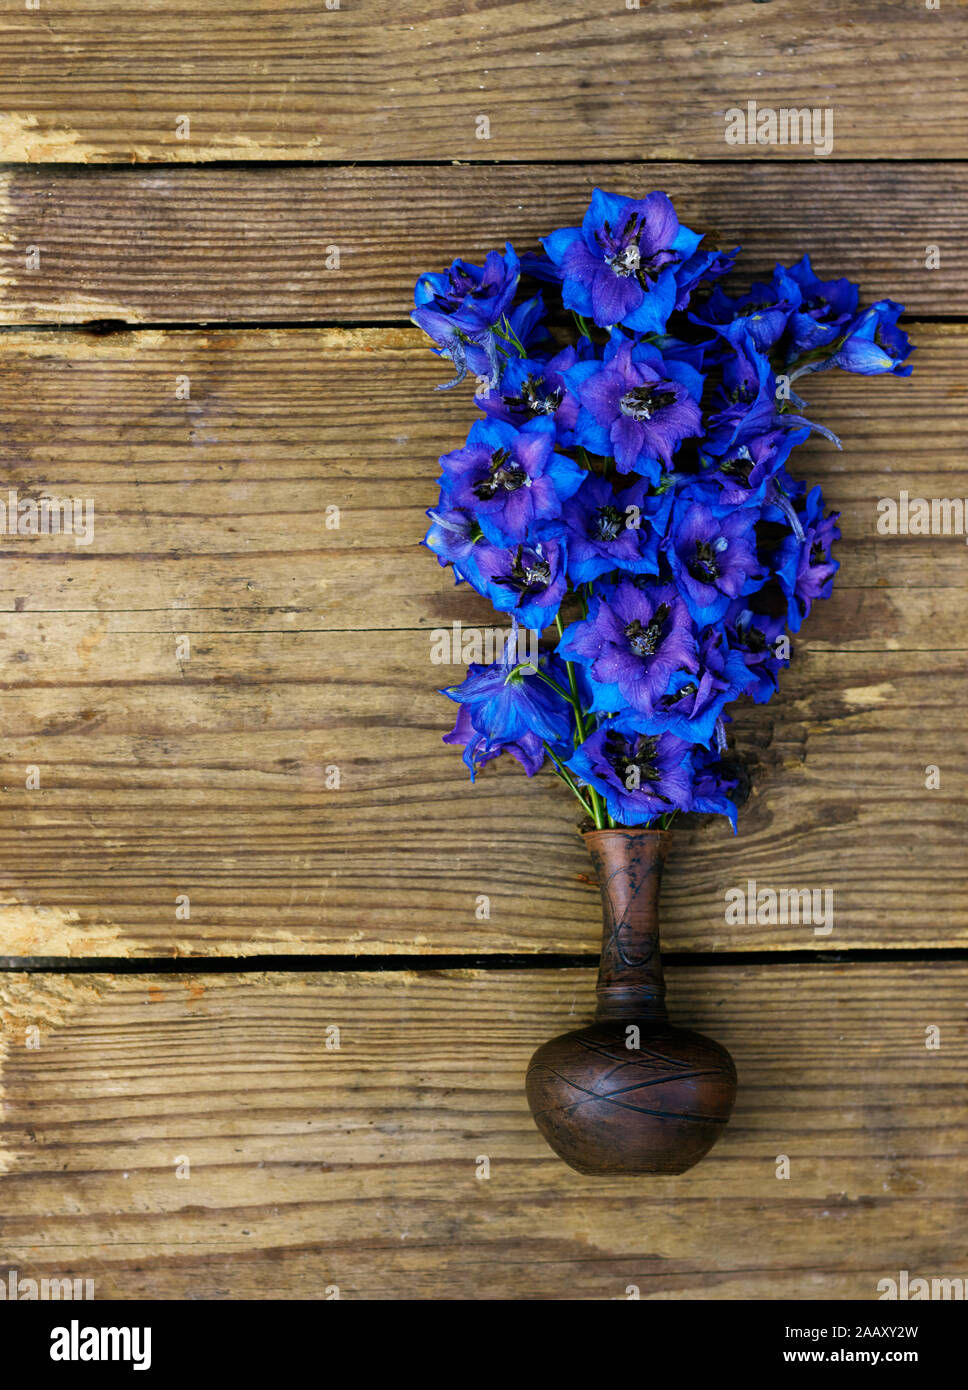 Bouquet muy brillantes y coloridas flores delphinium azul en una pequeña  vasija de barro en el rústico de madera desgastada raído, de fondo plano,  vista superior laicos, clo Fotografía de stock -